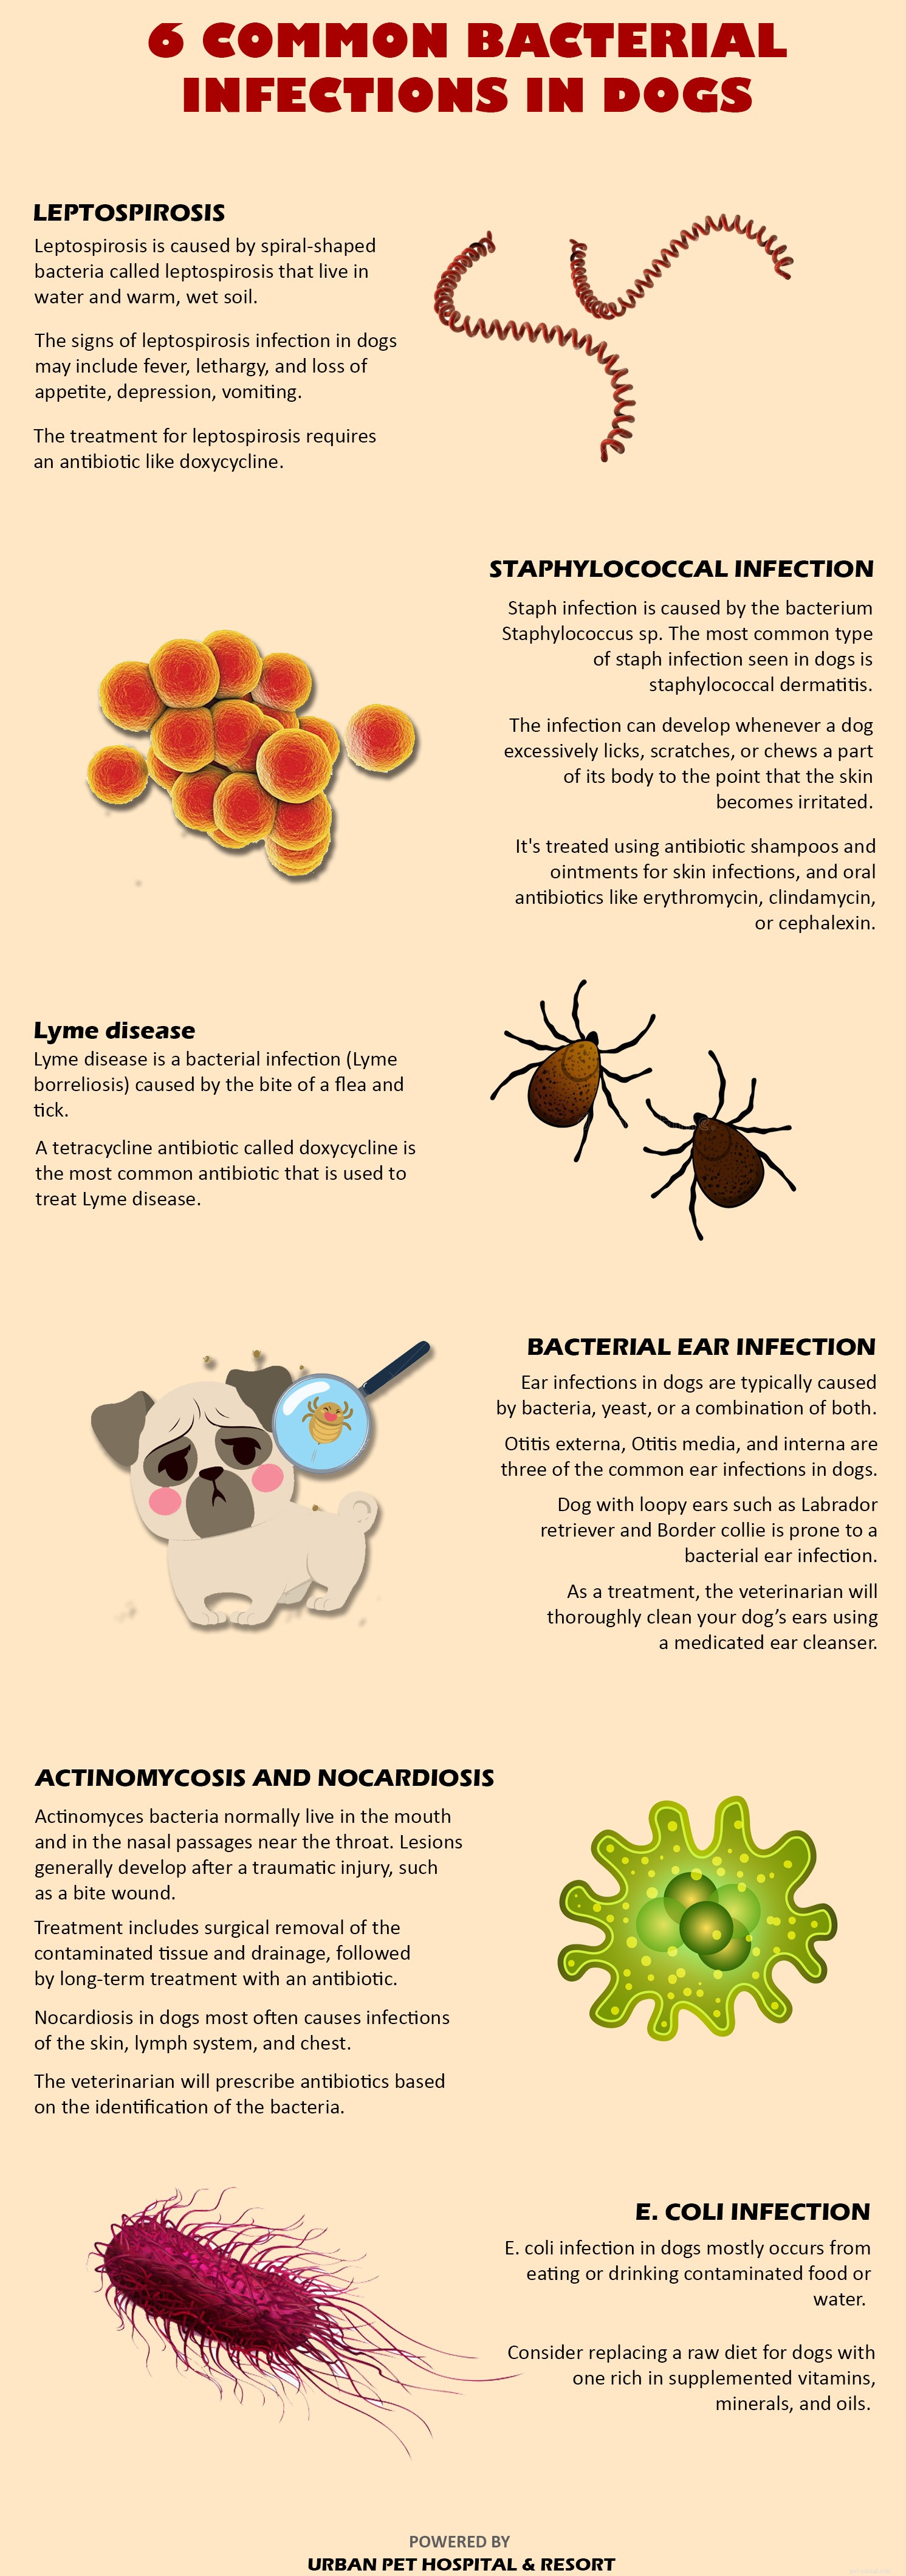 애완동물의 세균 감염을 치료하는 방법은 무엇입니까?